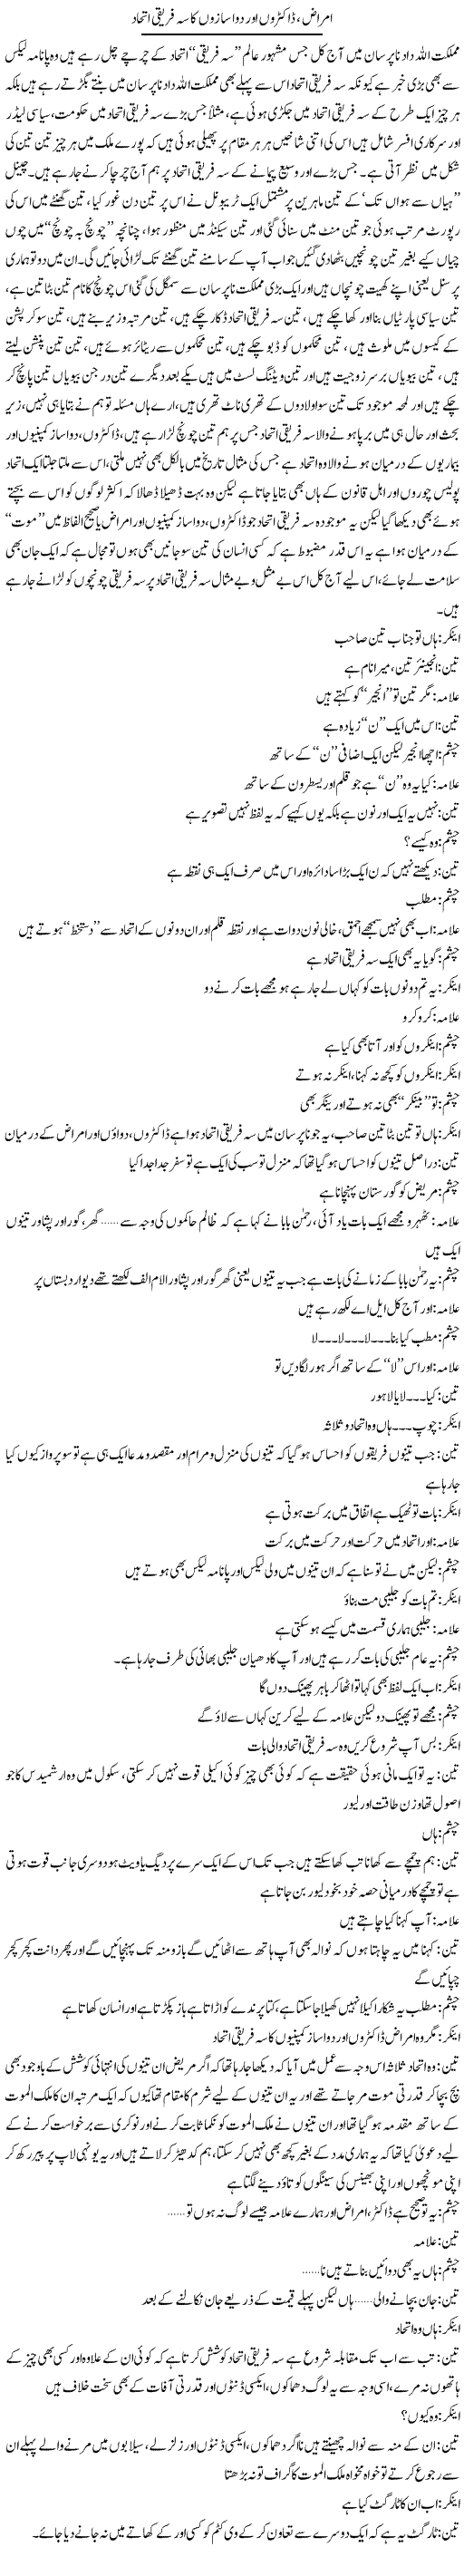 Amraaz, Doctron Aur Dawa Sazoon Ka Seh Freeqi Ittehaad | Saad Ullah Jan Barq | Daily Urdu Columns